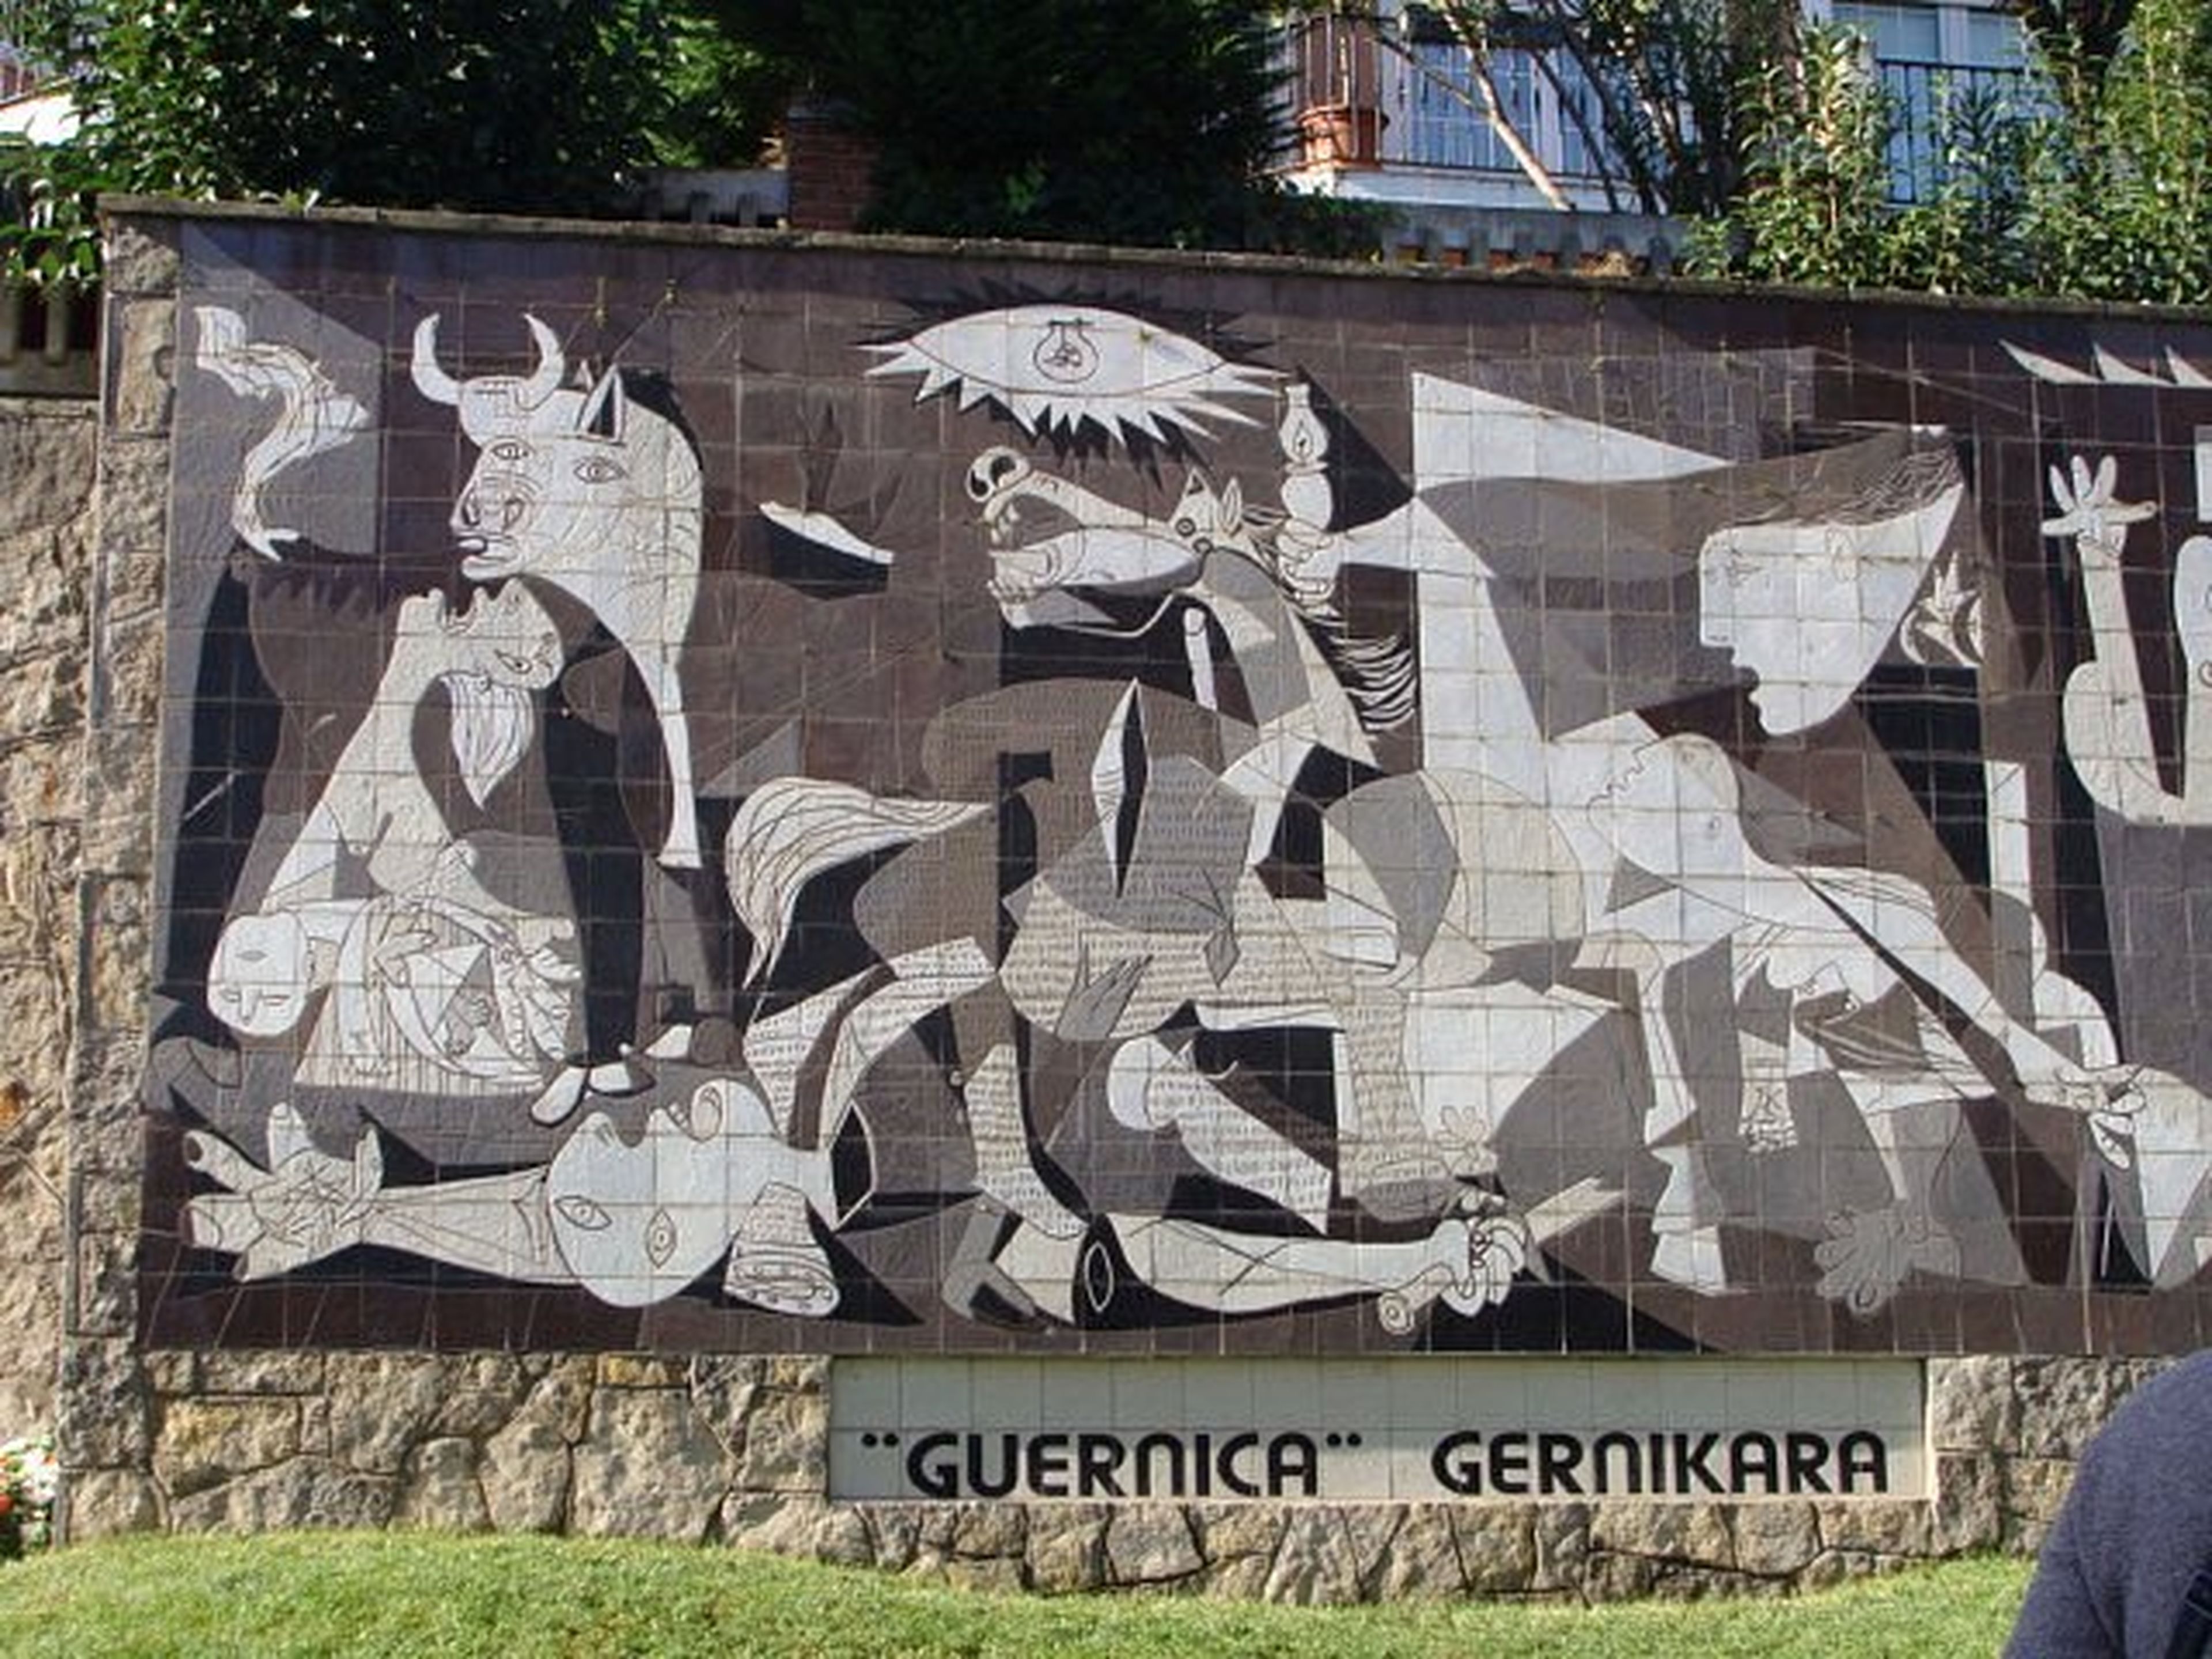 Mural del "Guernica" de Picasso, Vizcaya.